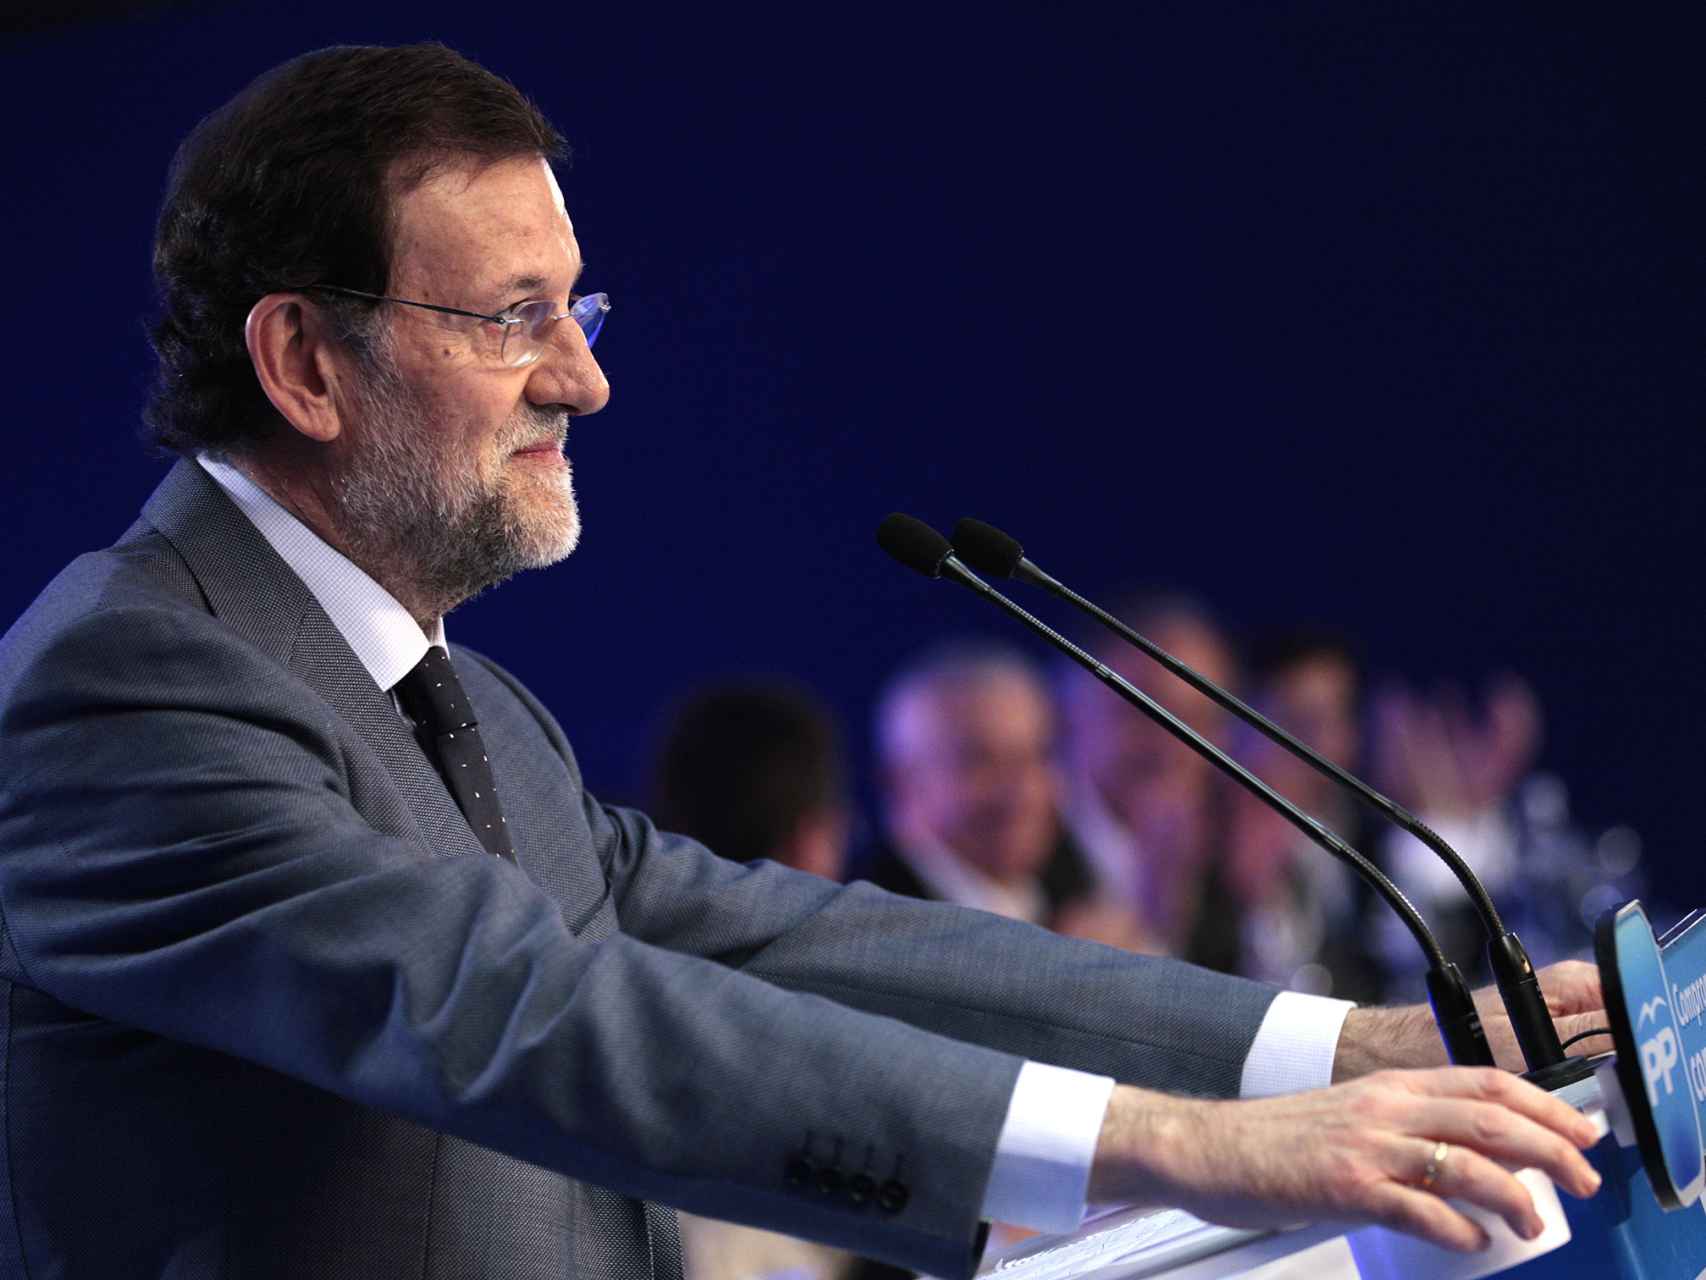 El líder del PP, Mariano Rajoy.